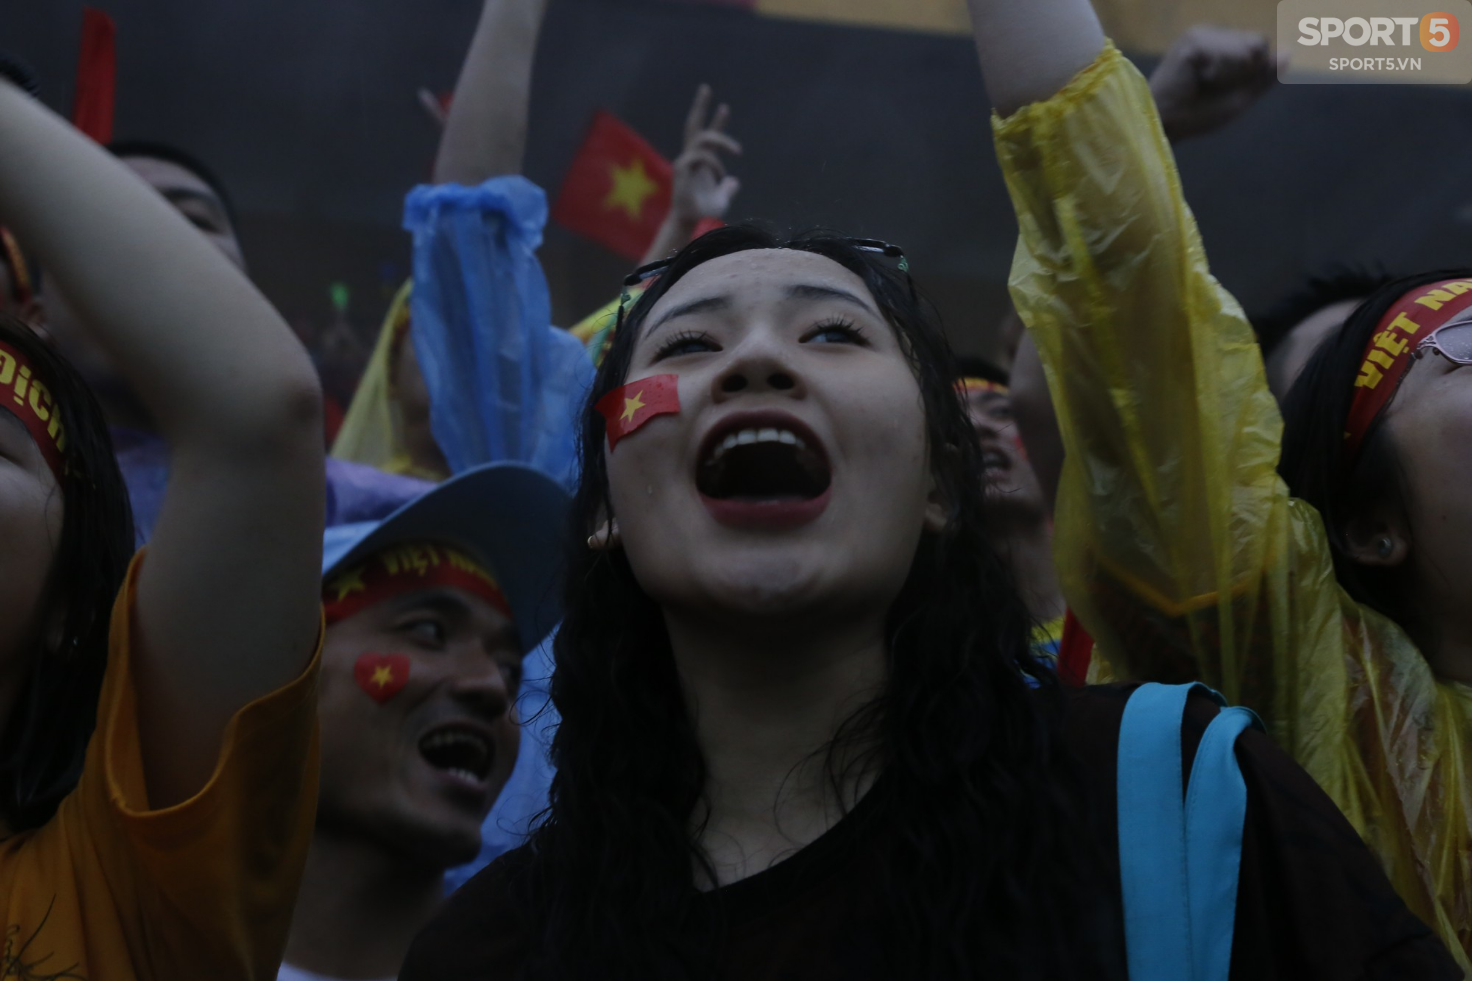 Ấm lòng hình ảnh người hâm mộ Việt Nam đội mưa tới giây cuối cùng dù đội nhà thất bại - Ảnh 13.